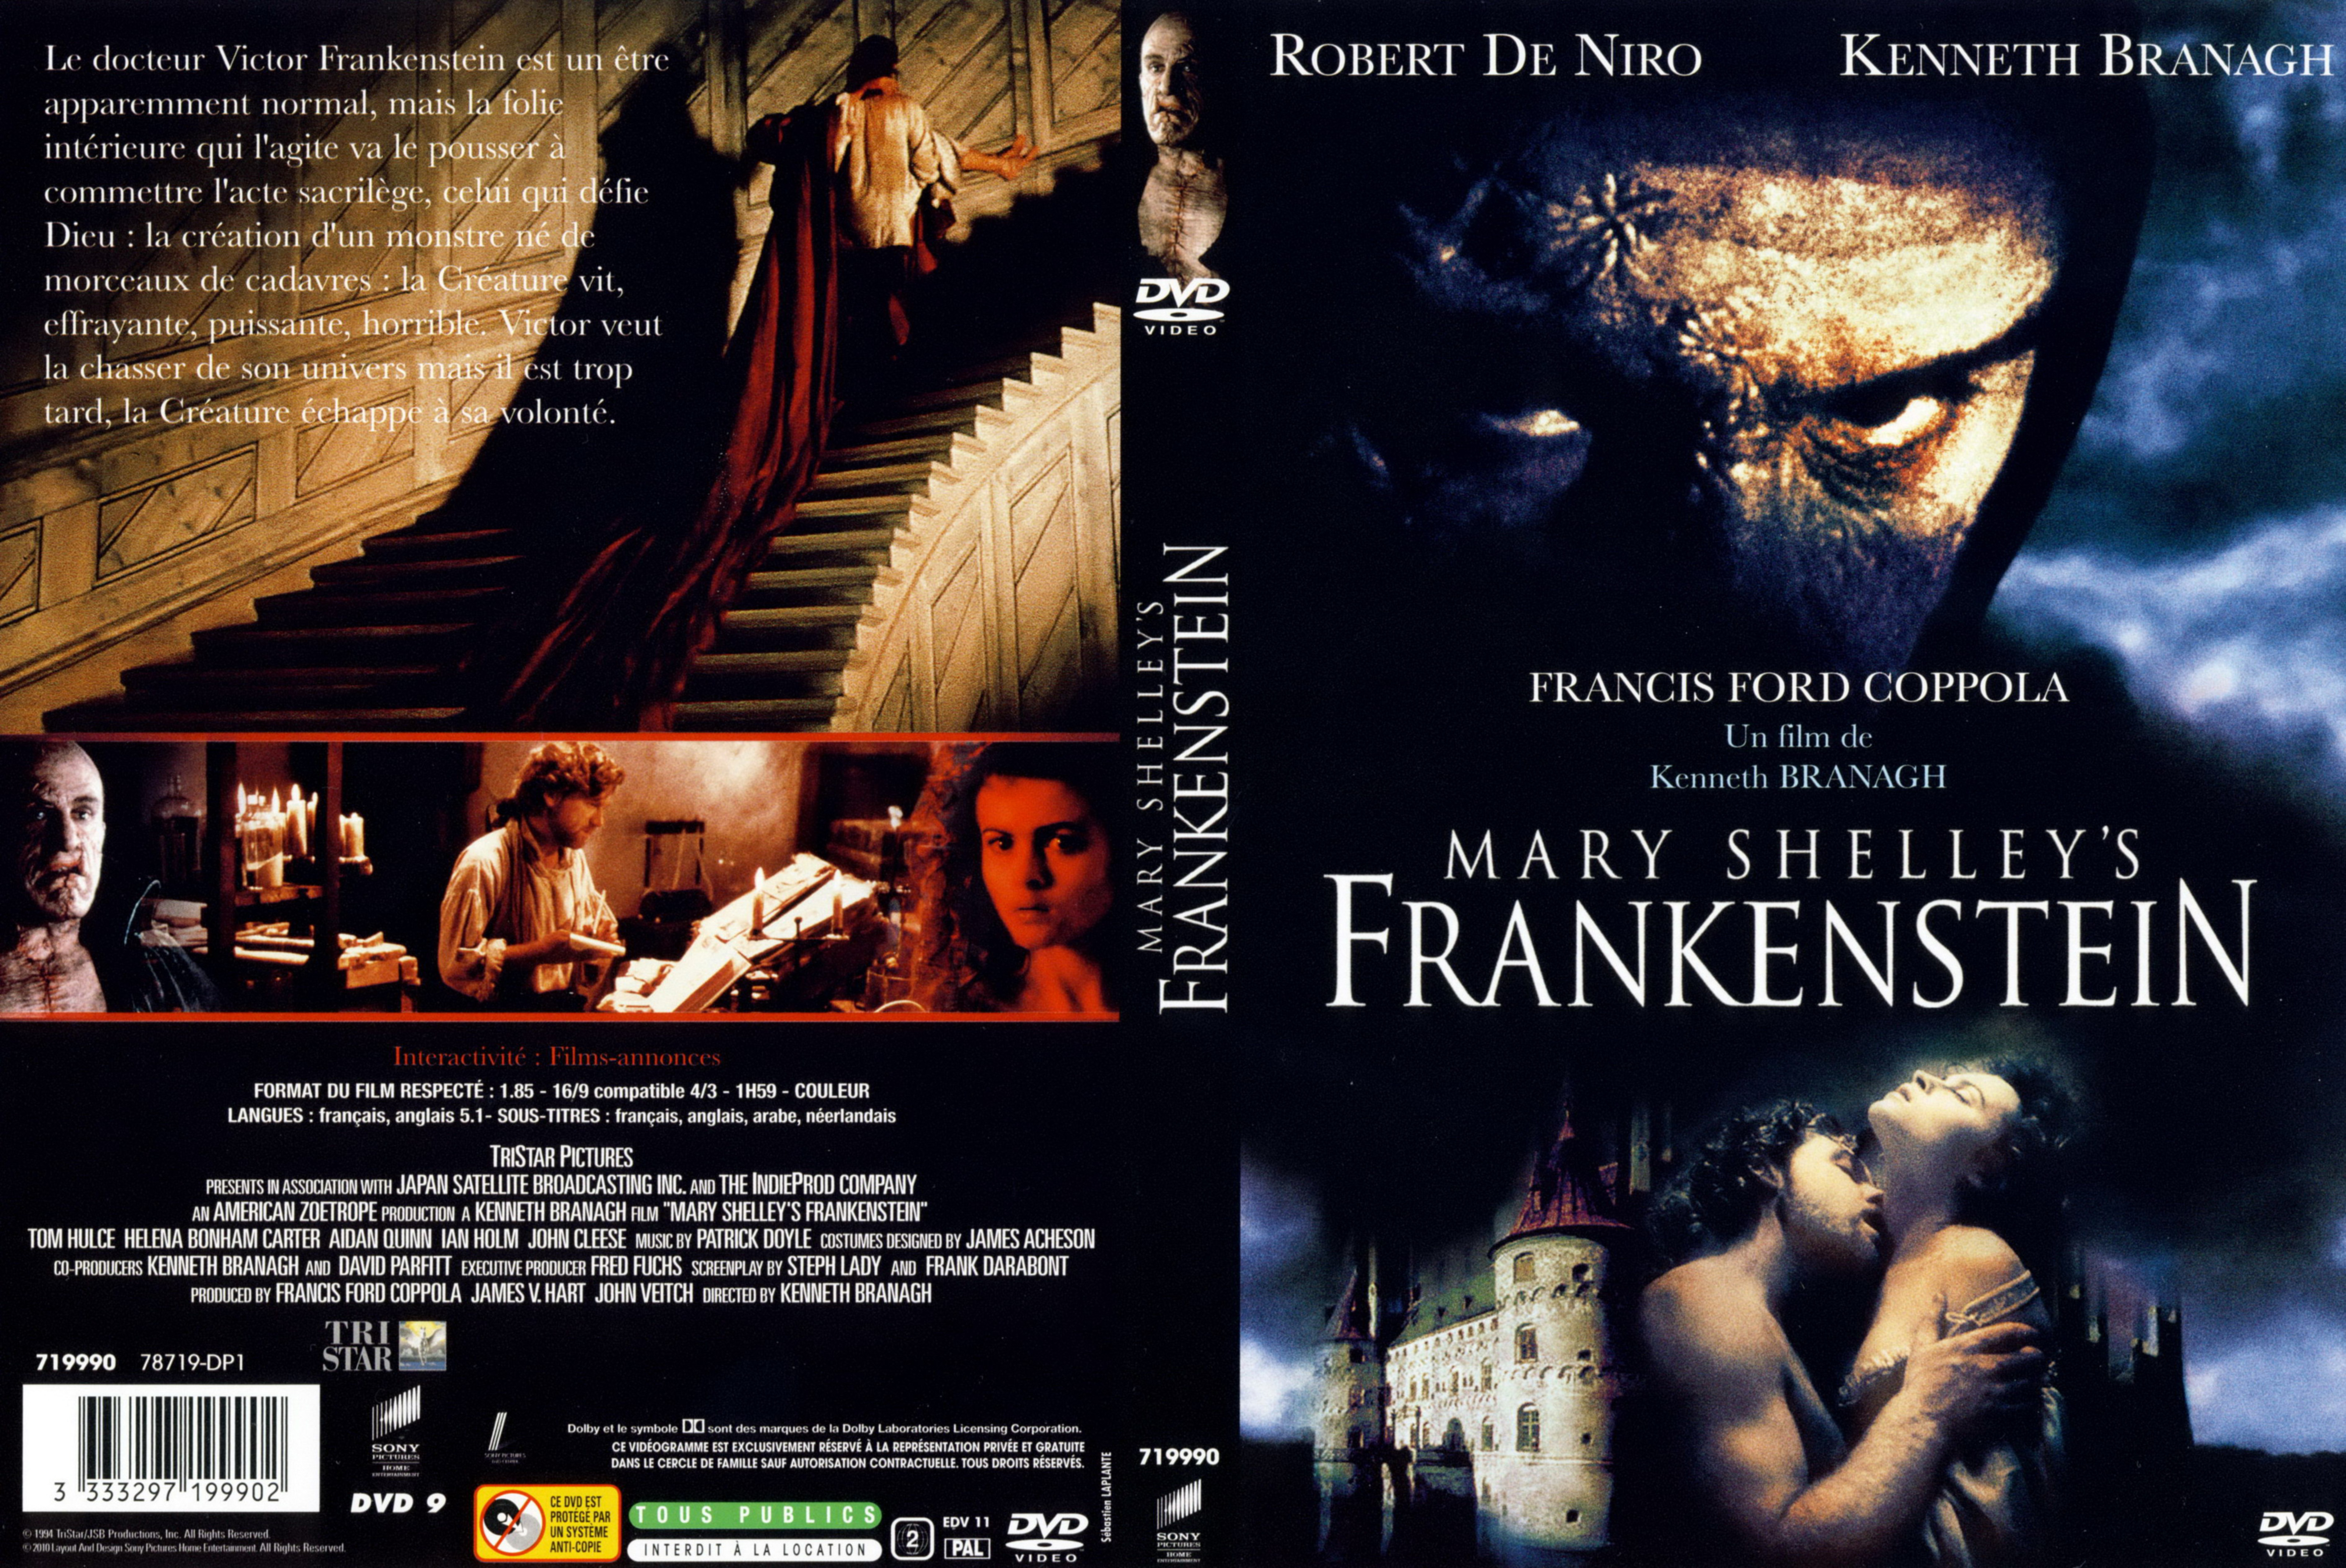 Jaquette DVD Frankenstein (Robert De Niro) v3